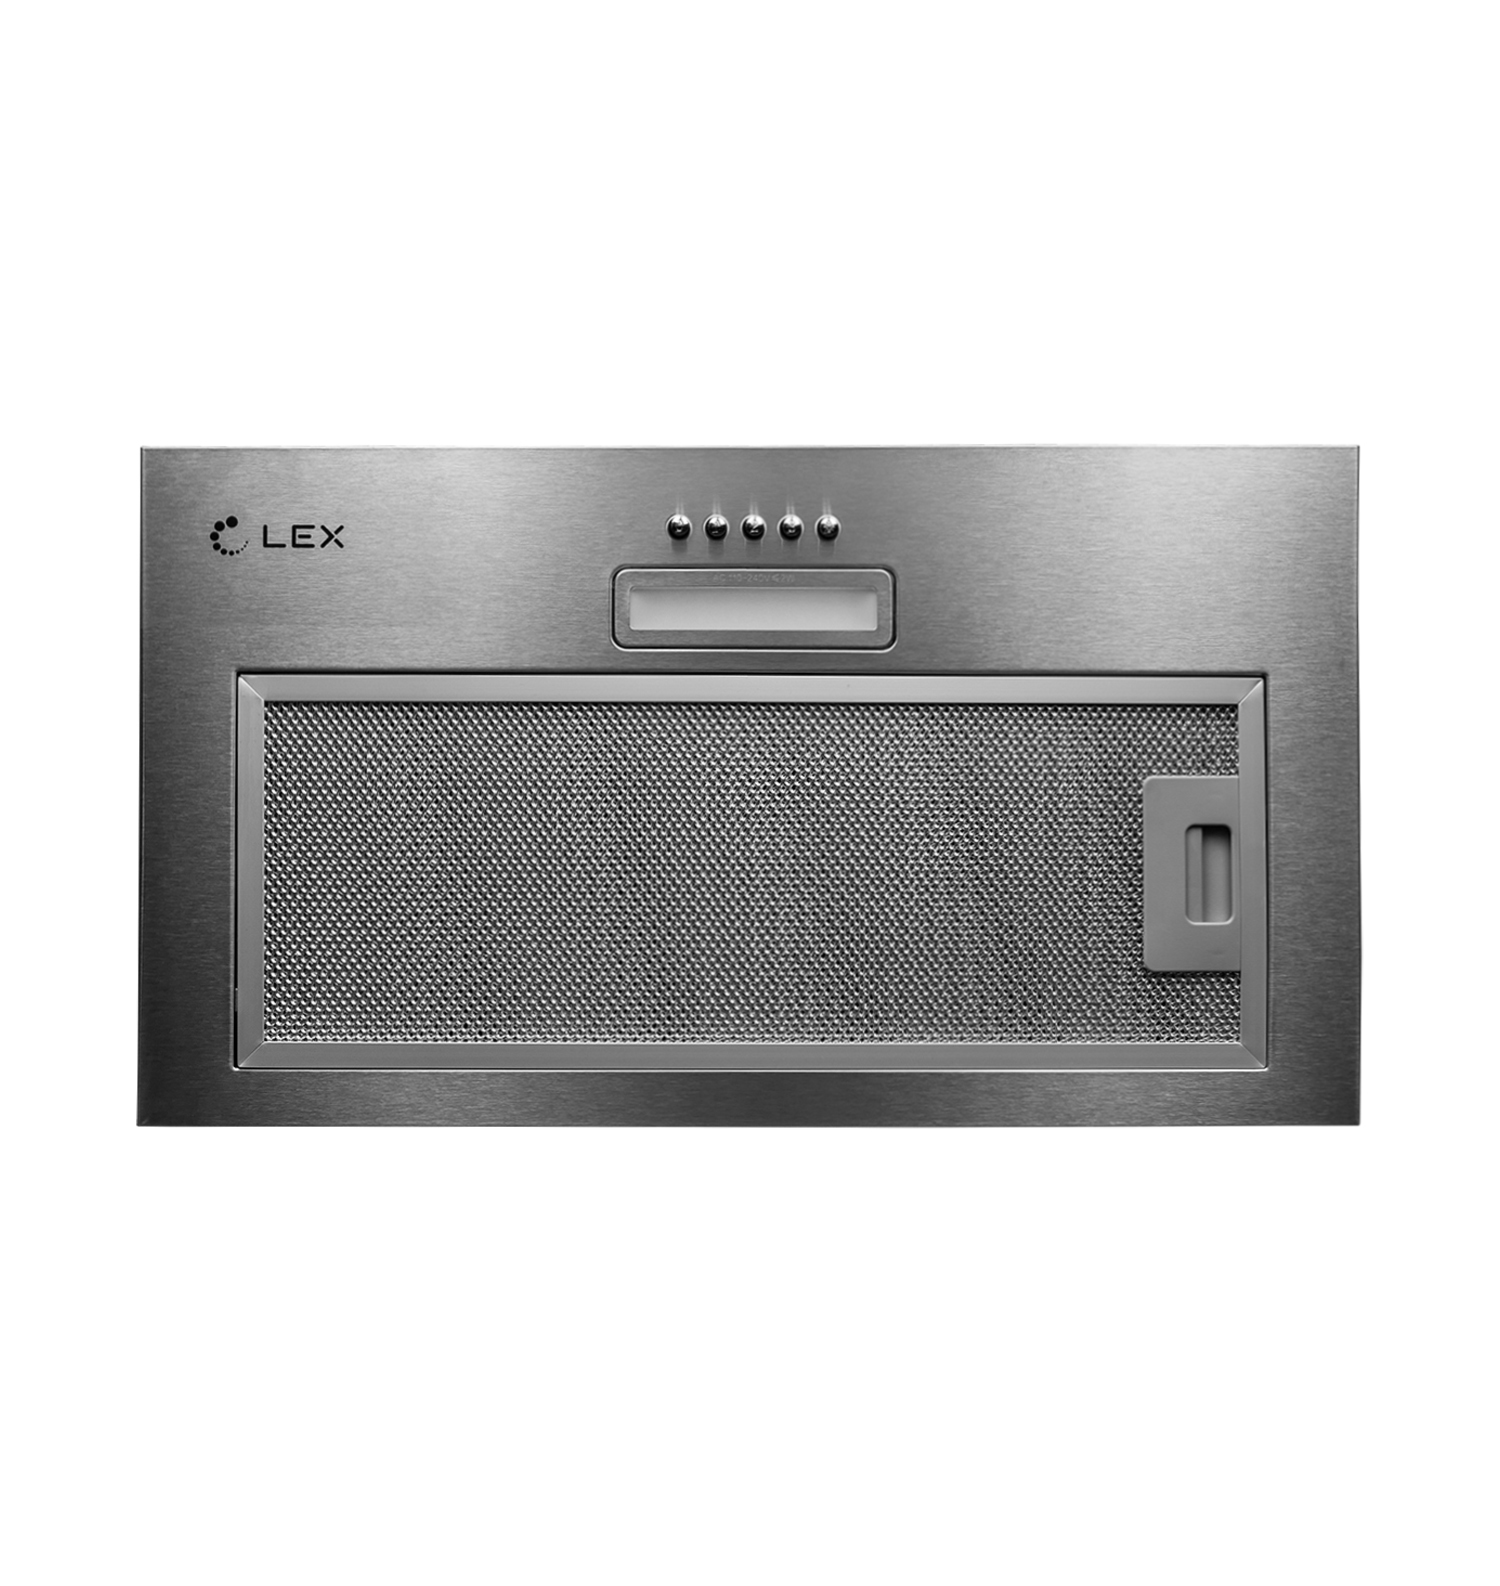 Кухонная вытяжка встраиваемая Lex GS Bloc Light 60 см серая (CHTI000328) кухонная вытяжка встраиваемая lex gs bloc gs 60 см черная